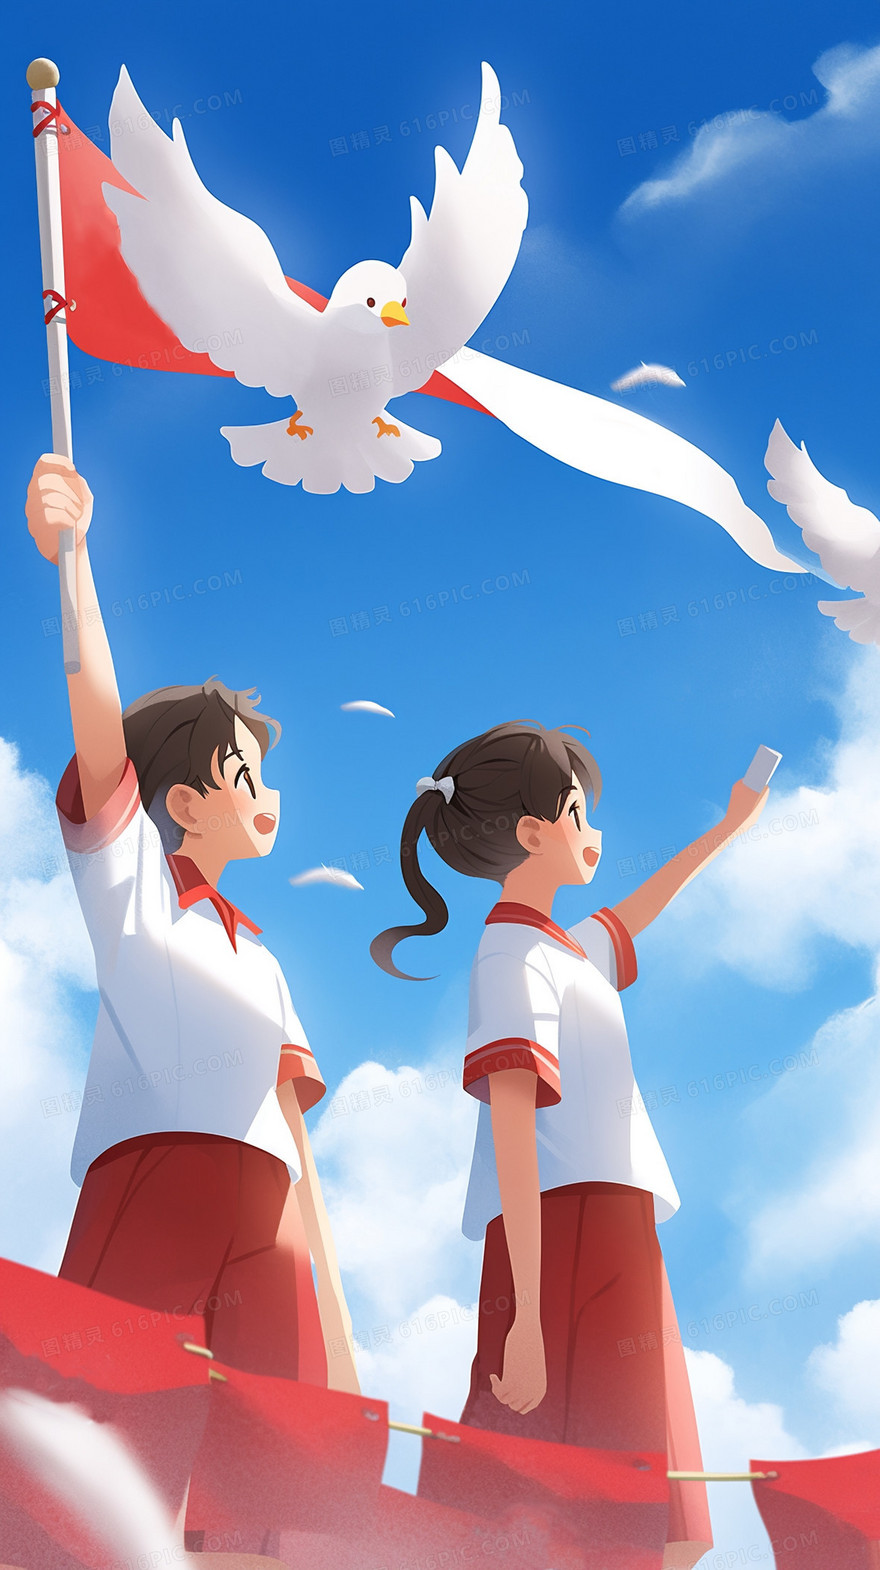 女学生站在蓝天白云白鸽对着红旗宣誓